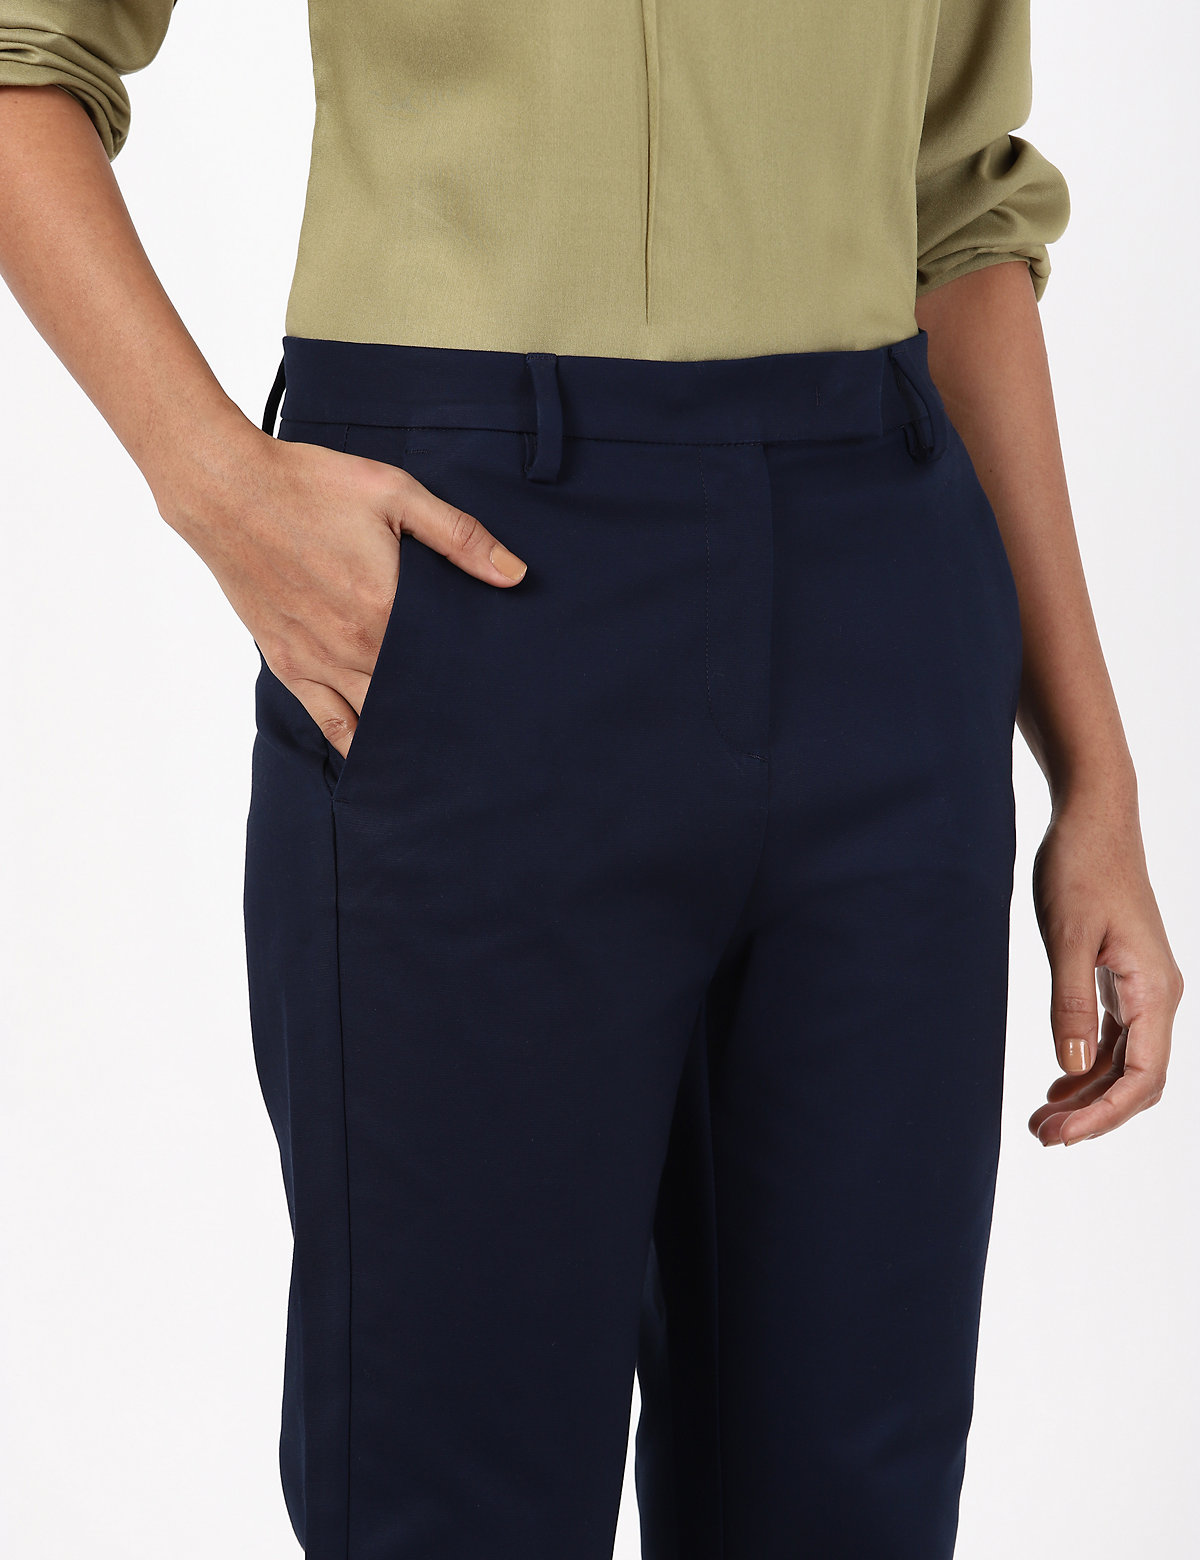 Cotton Mix Plain Regular Fit Trouser